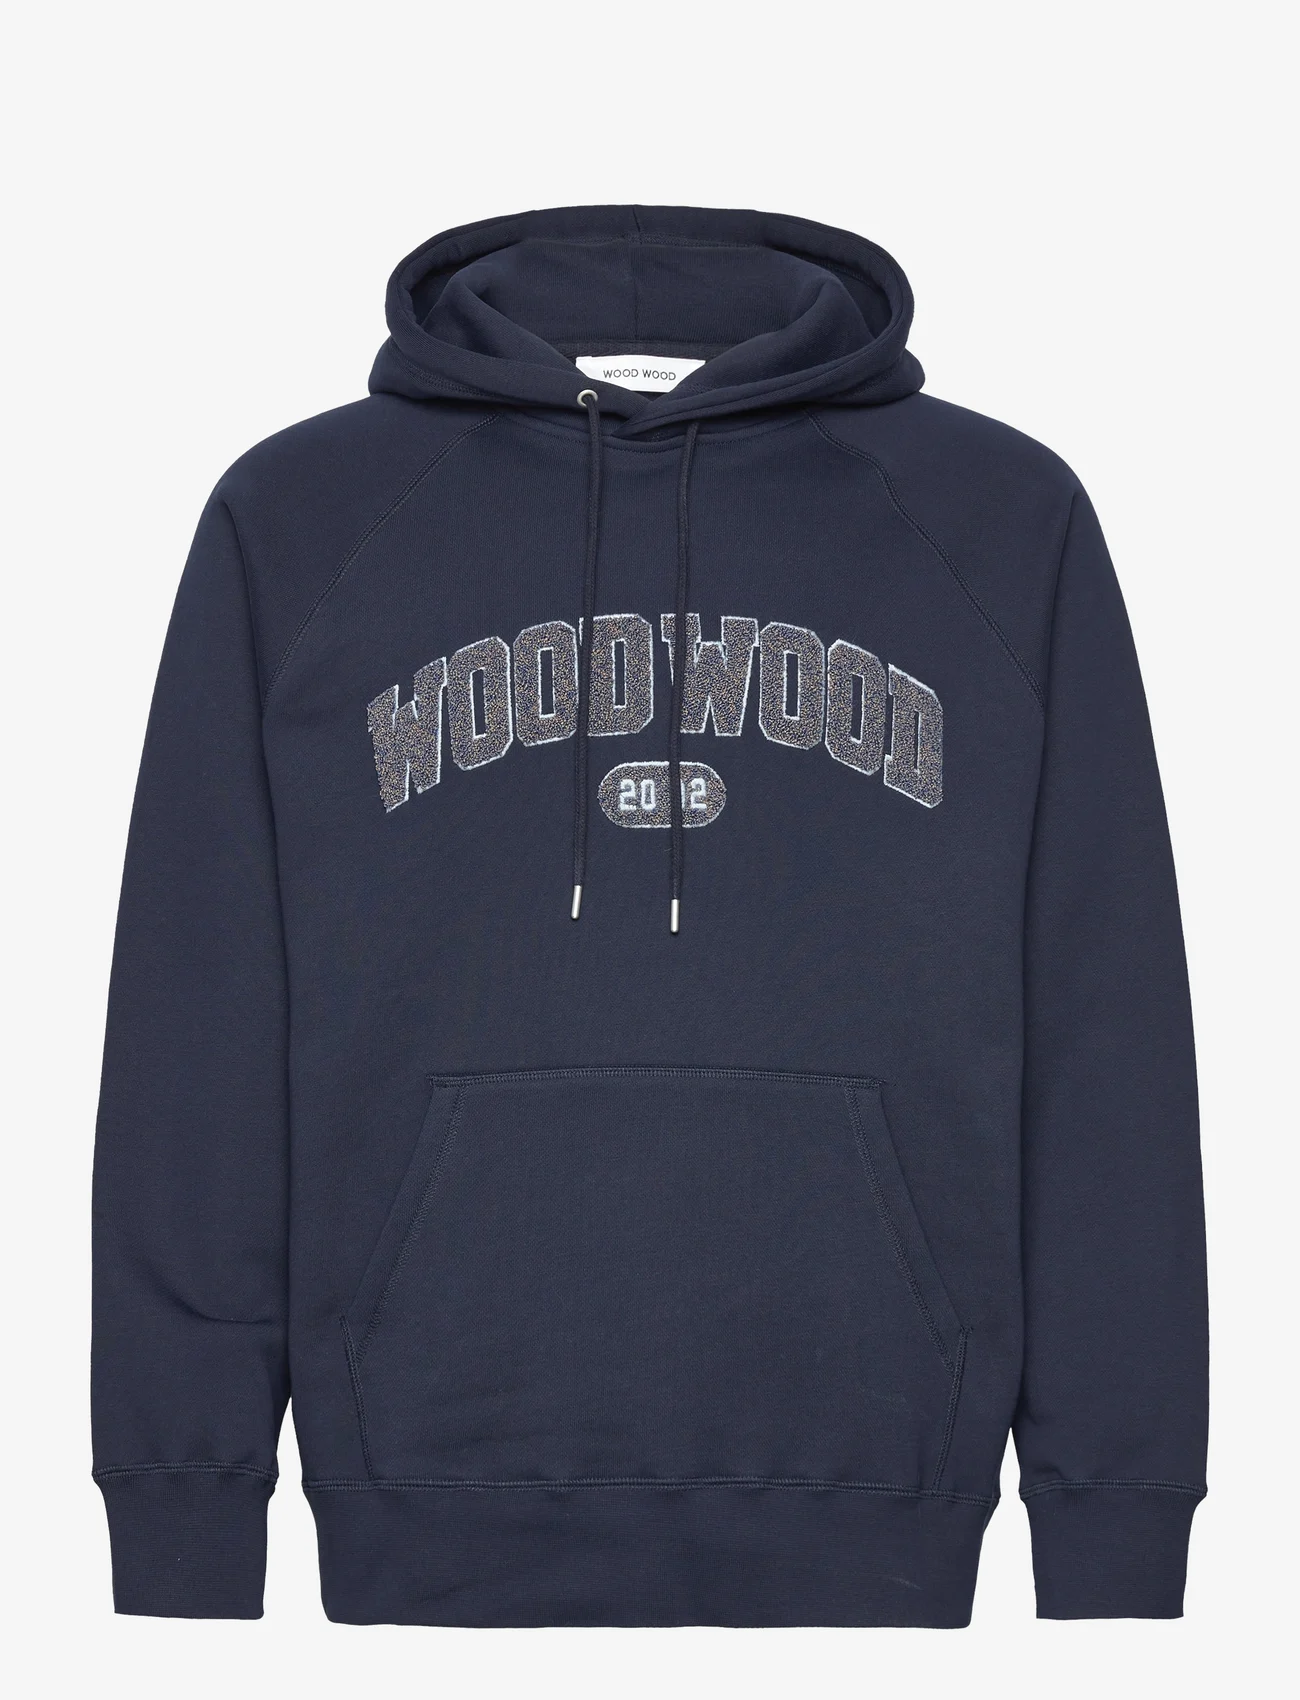 Wood Wood - Fred IVY hoodie - huvtröjor - navy - 0